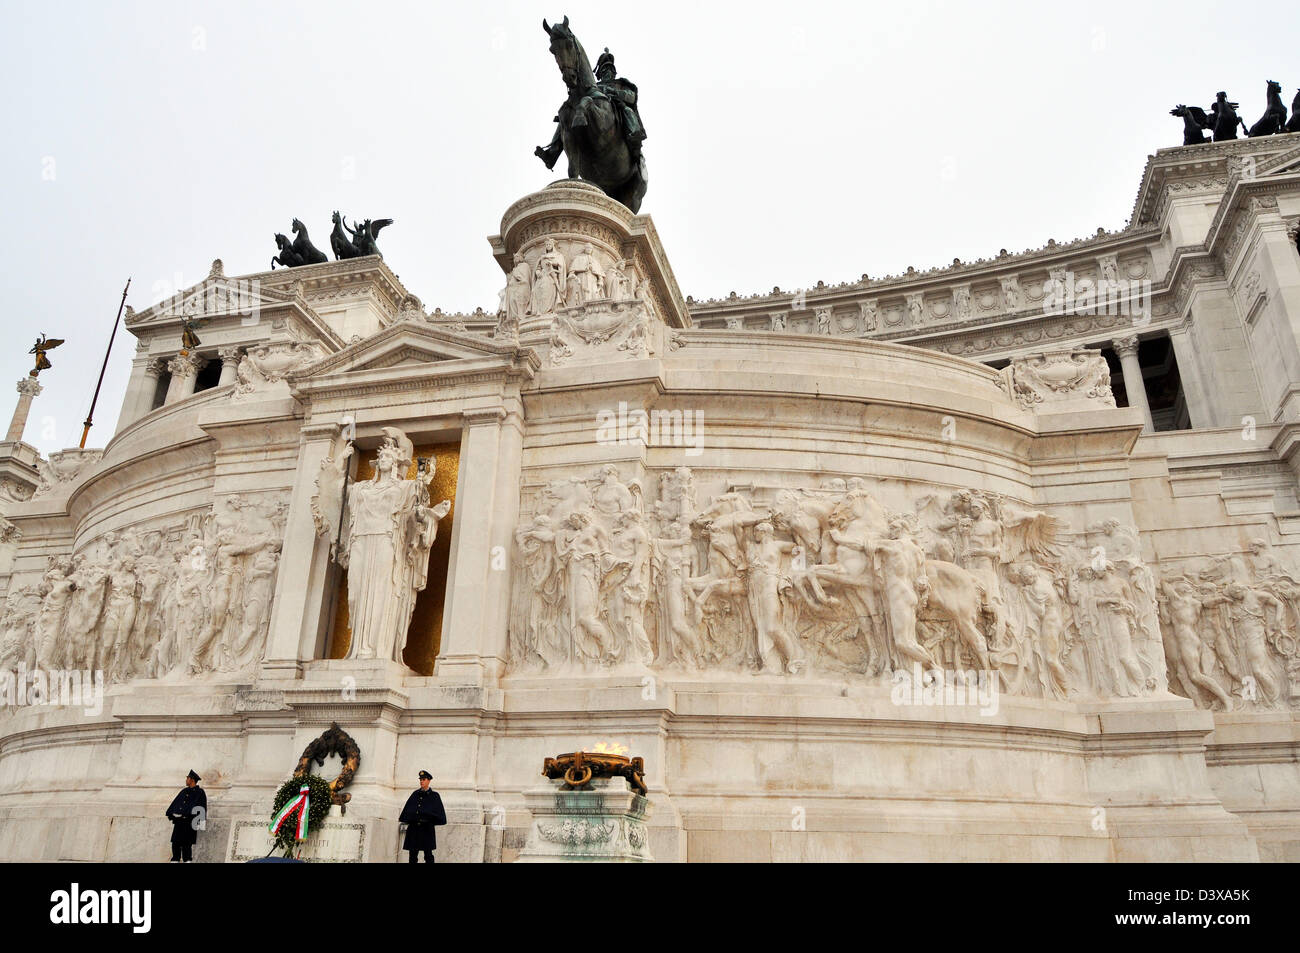 La Piazza Venezia, le Monument Victor Emmanuel, Rome Italie. Banque D'Images